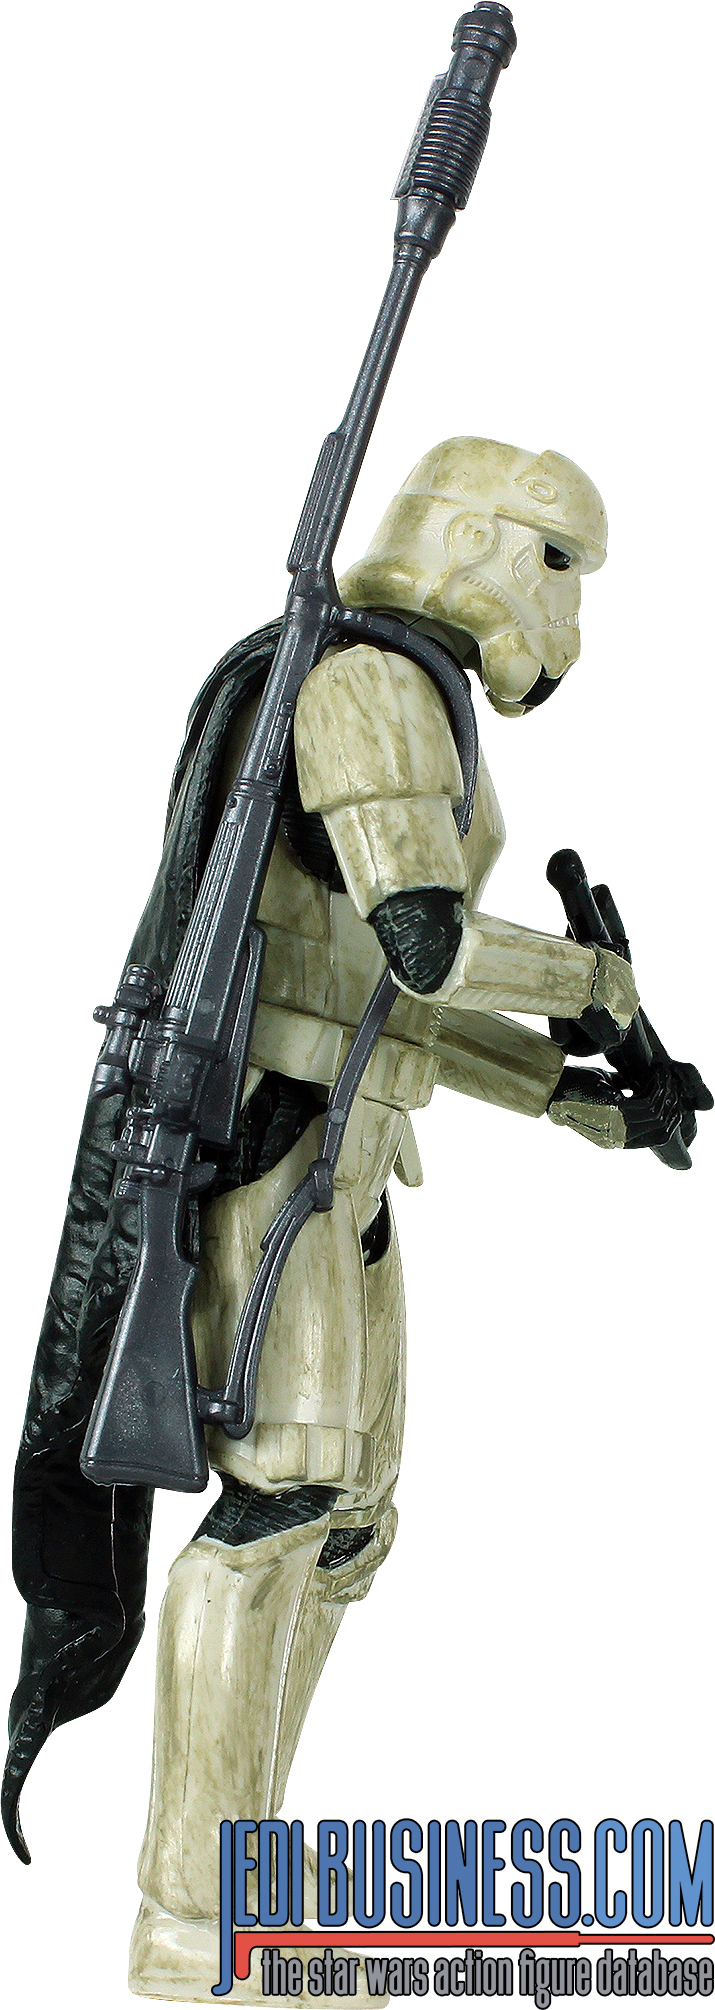 Stormtrooper Target Trooper 6-Pack